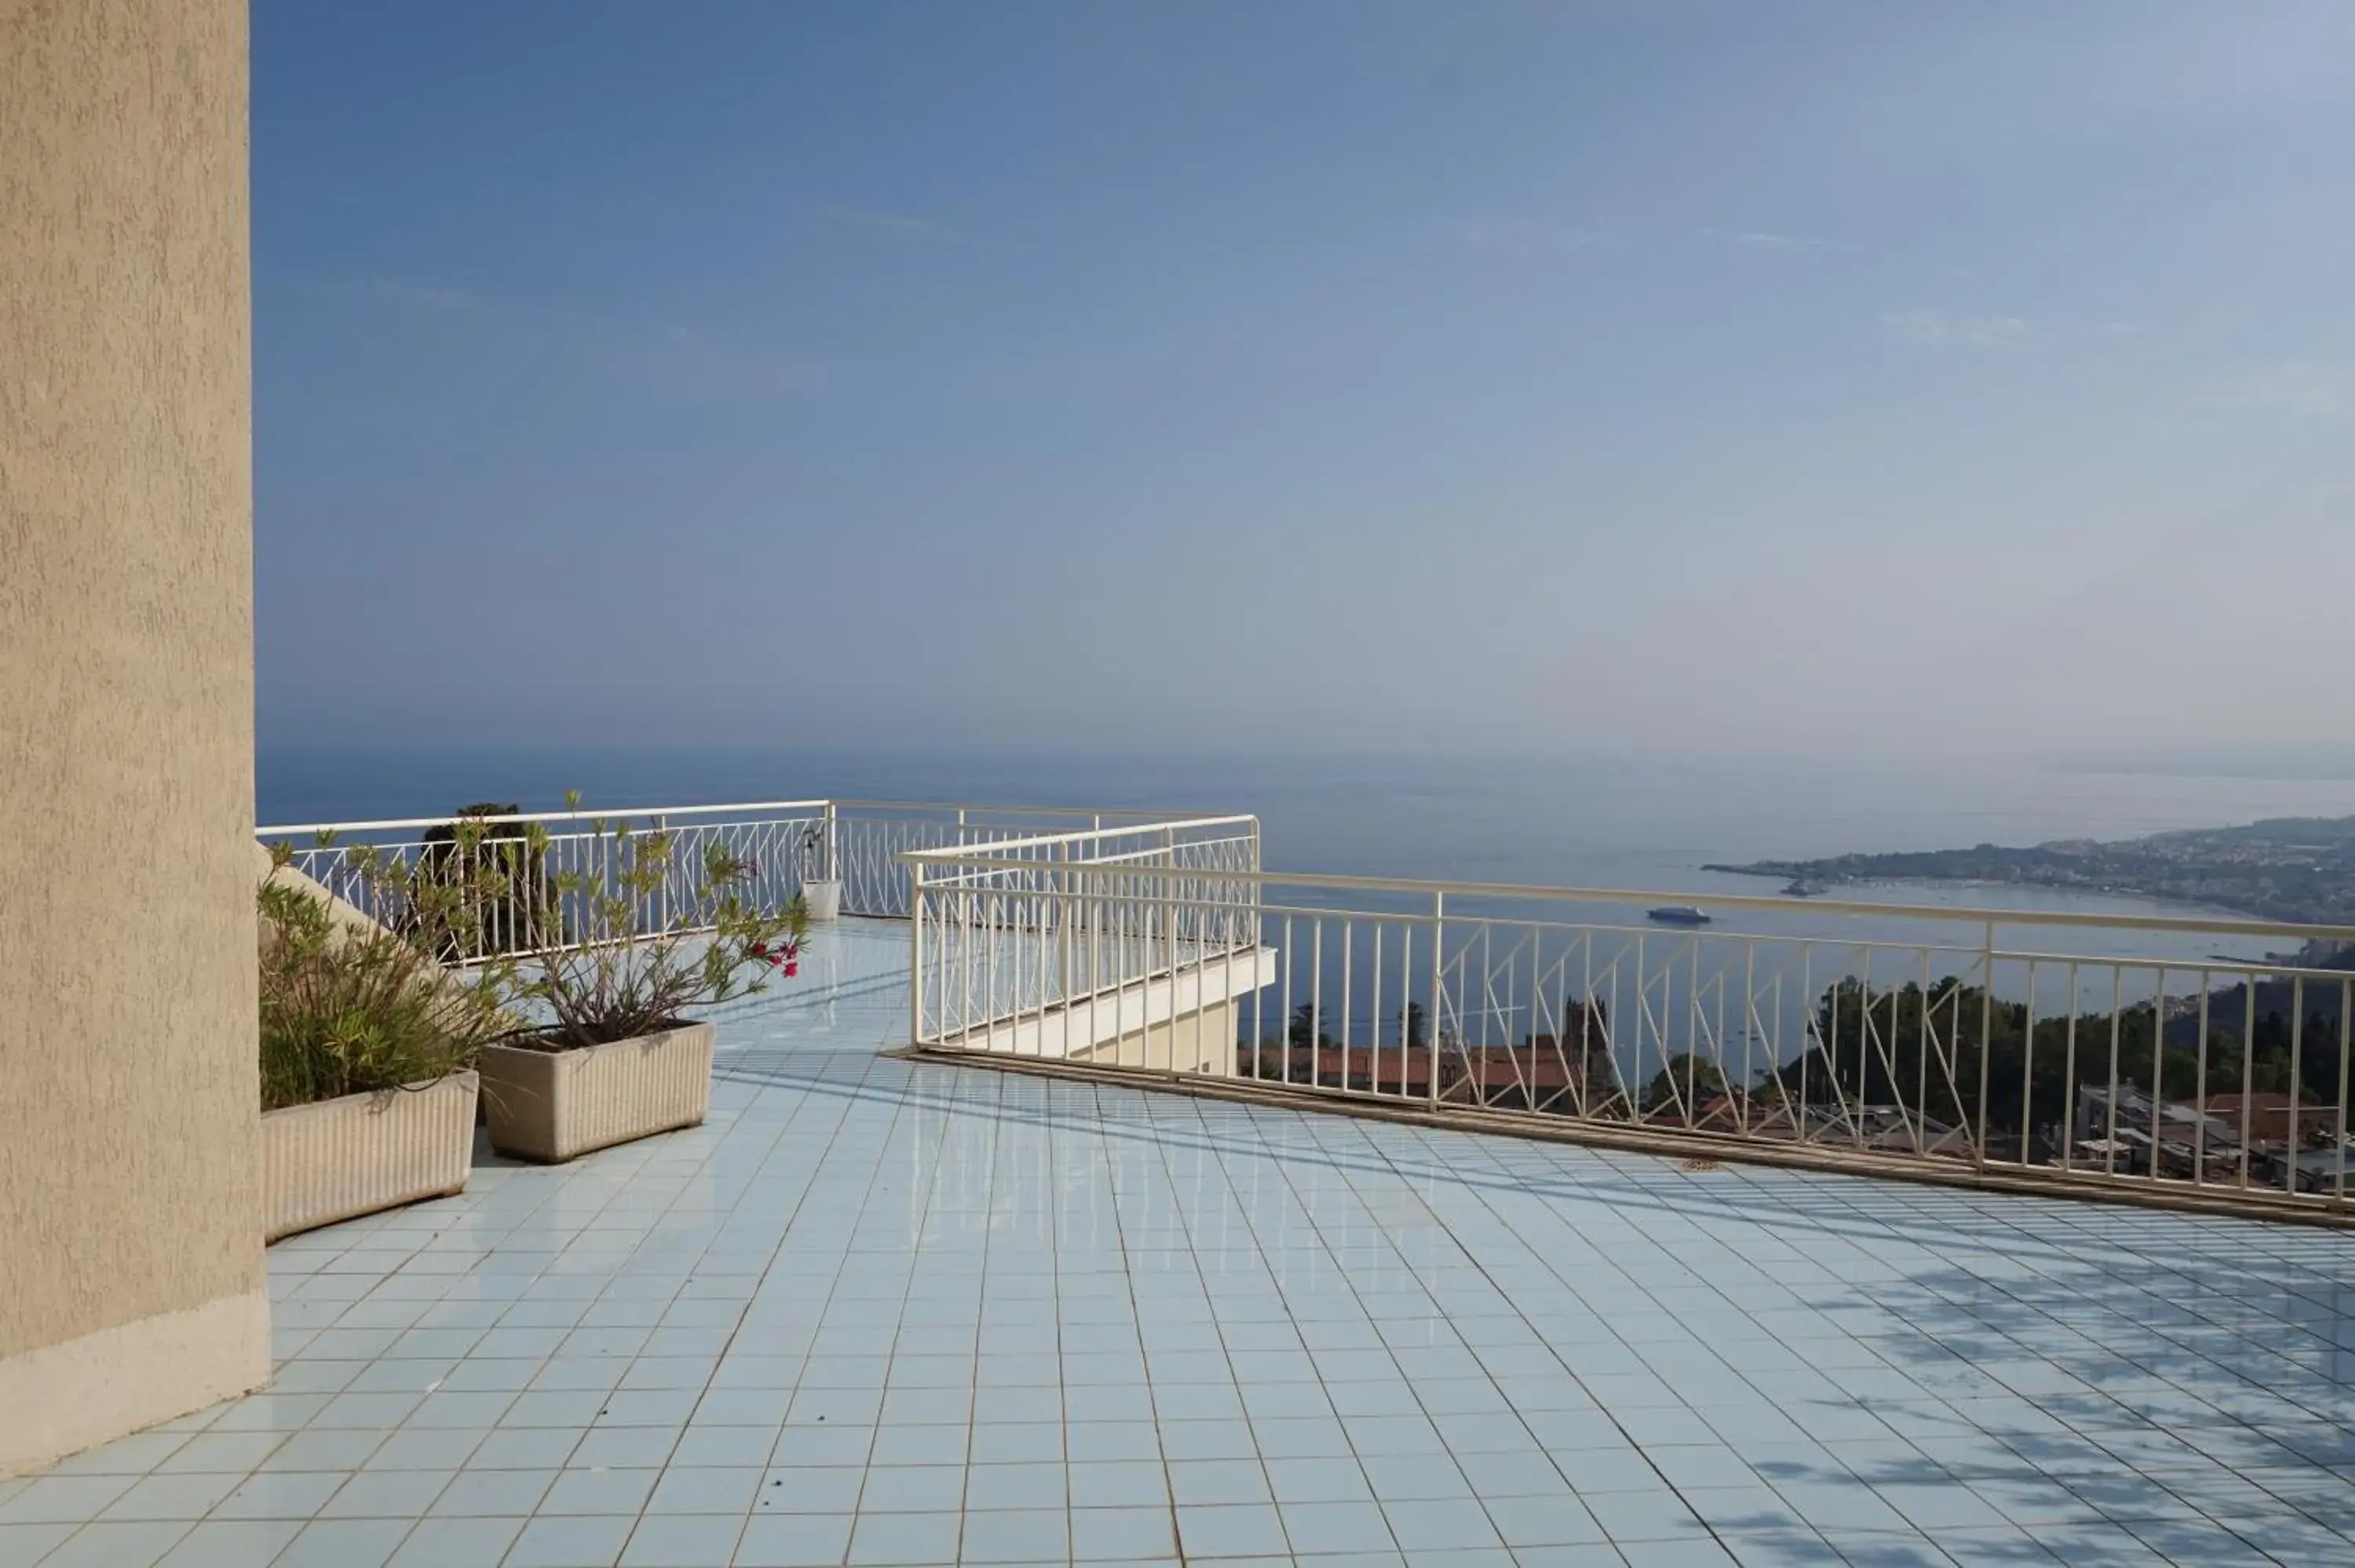 Balcony/Terrace, Patio/Outdoor Area in Hotel Mediterran